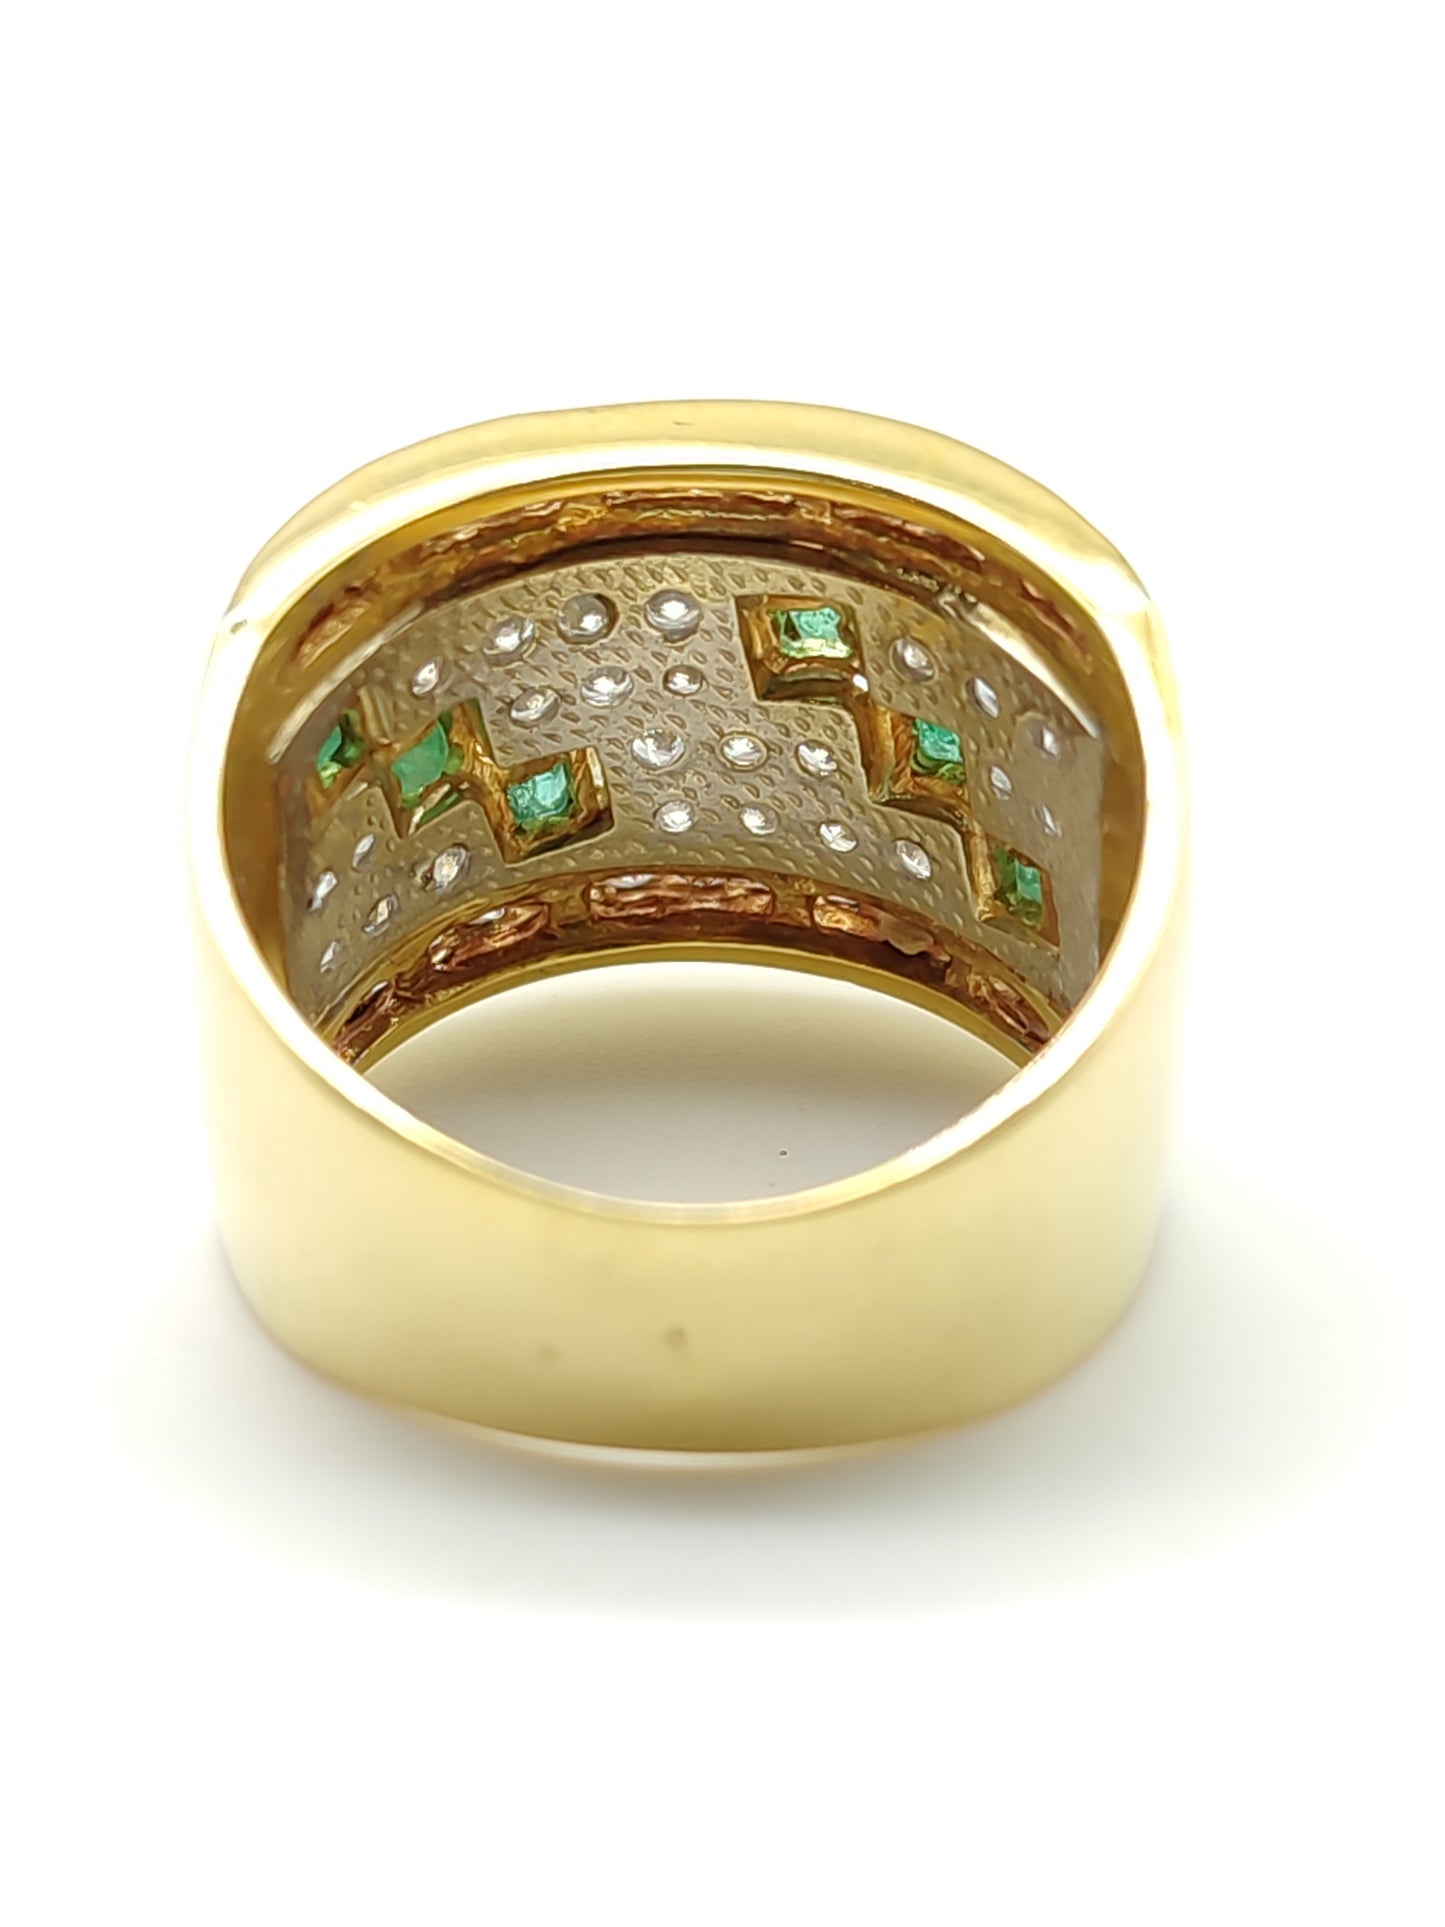 Pavan - Anello Fascia in oro con zirconi e smeraldi